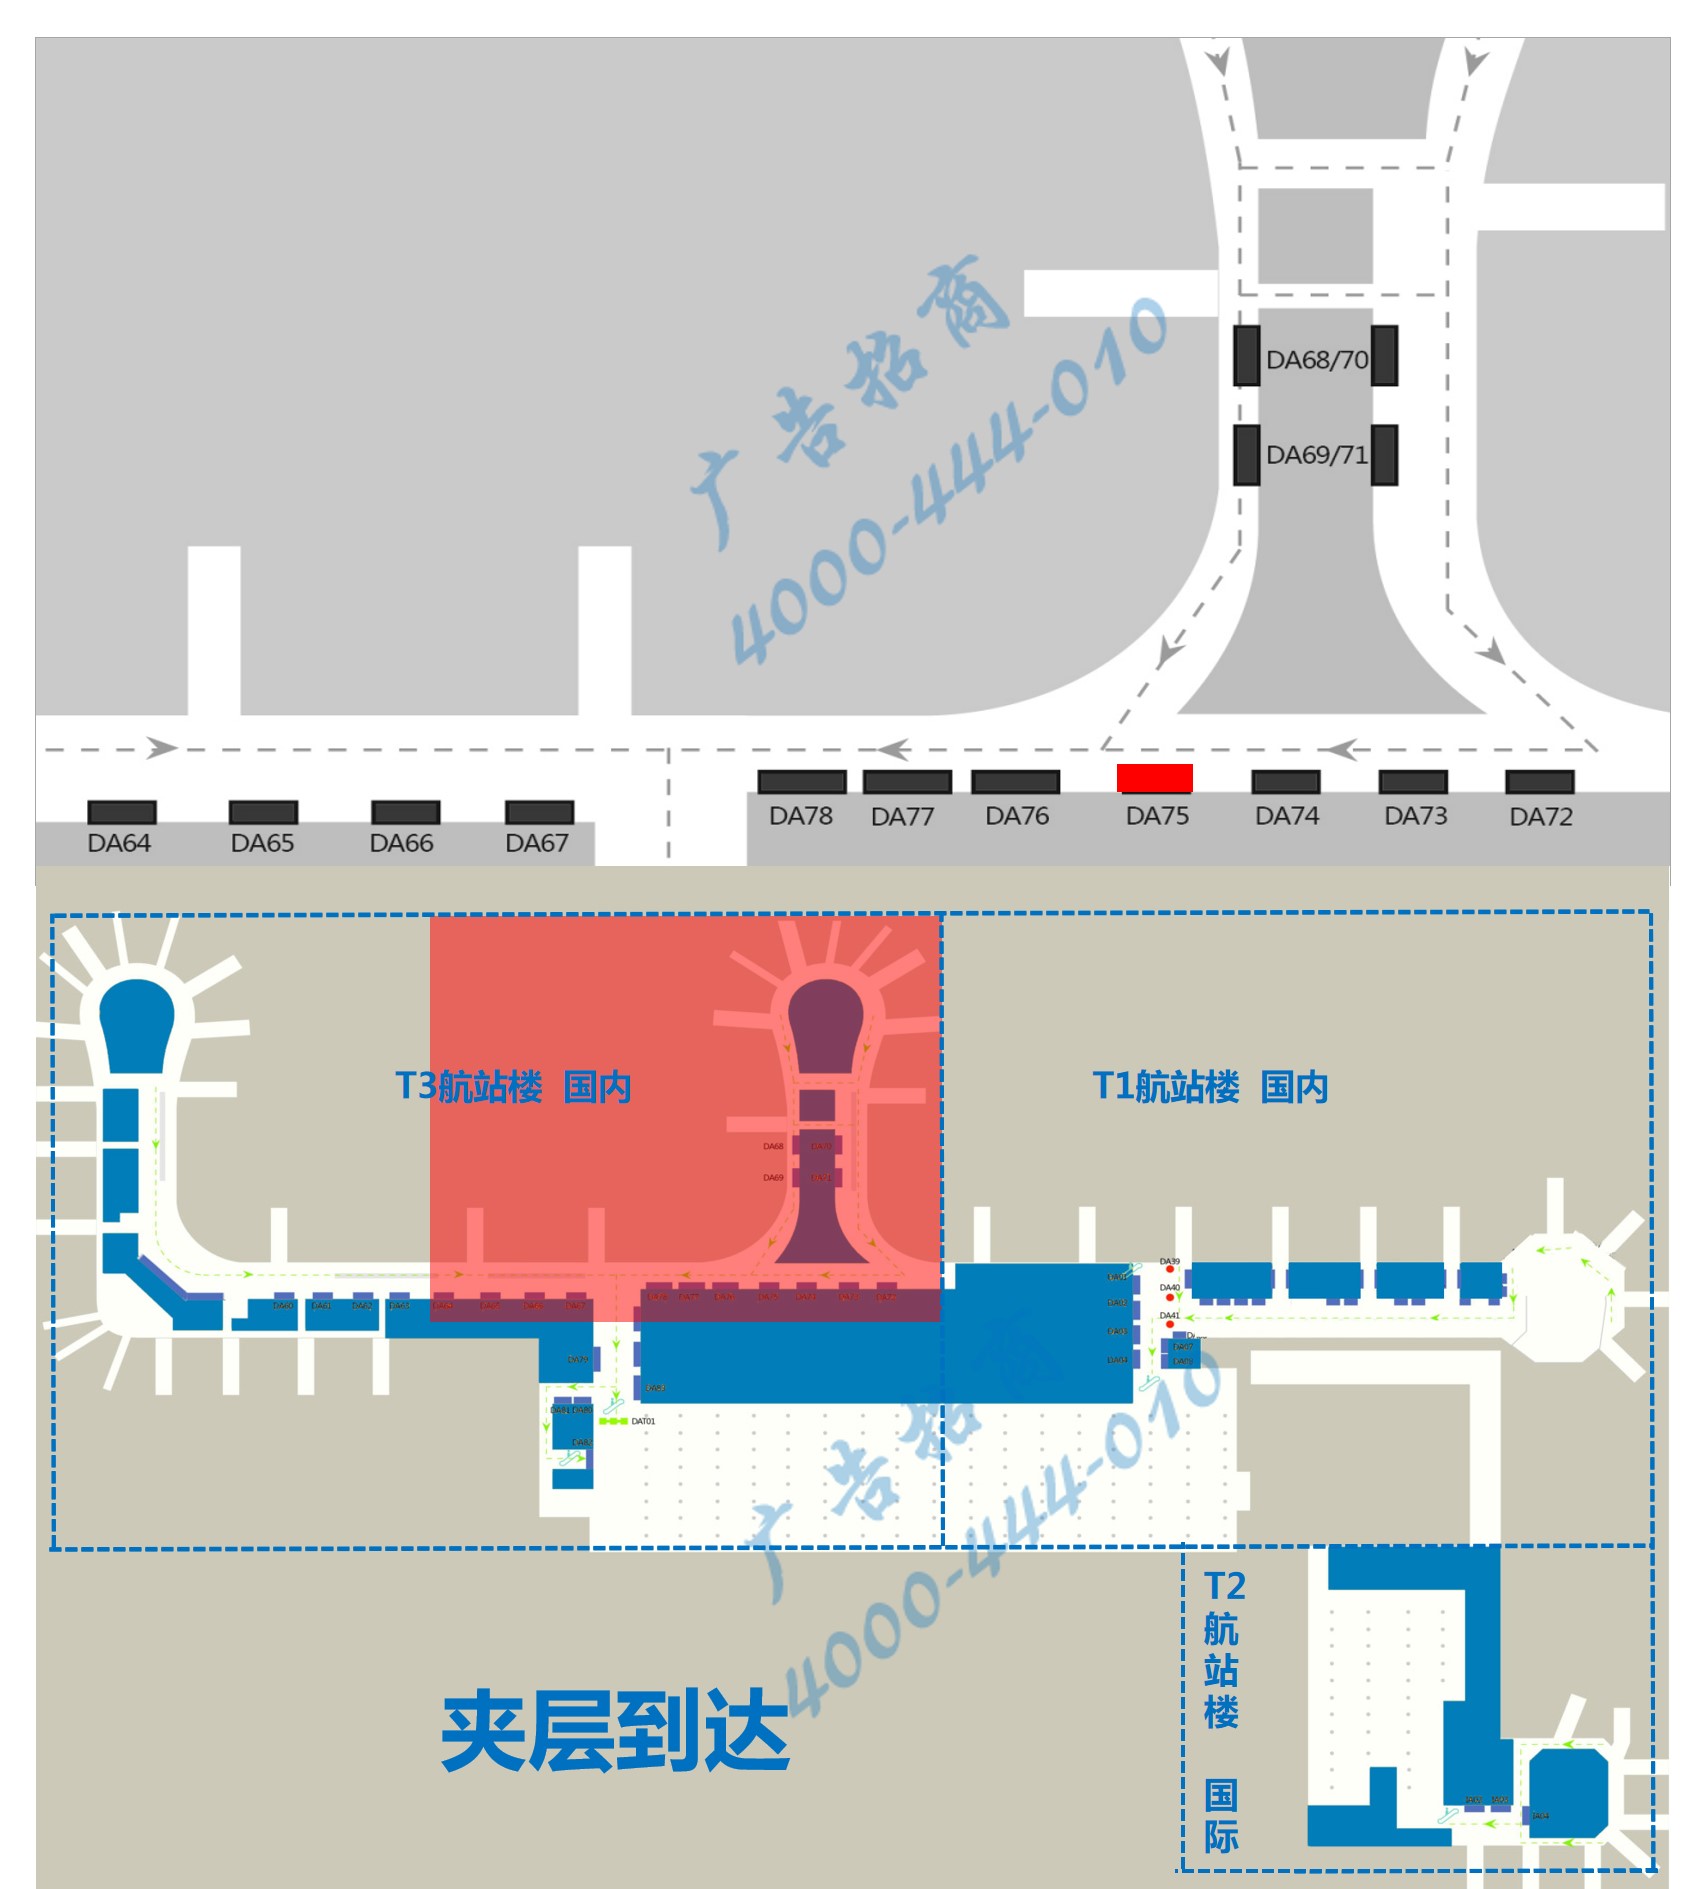 杭州萧山机场广告-T3到达通廊灯箱DA75位置图